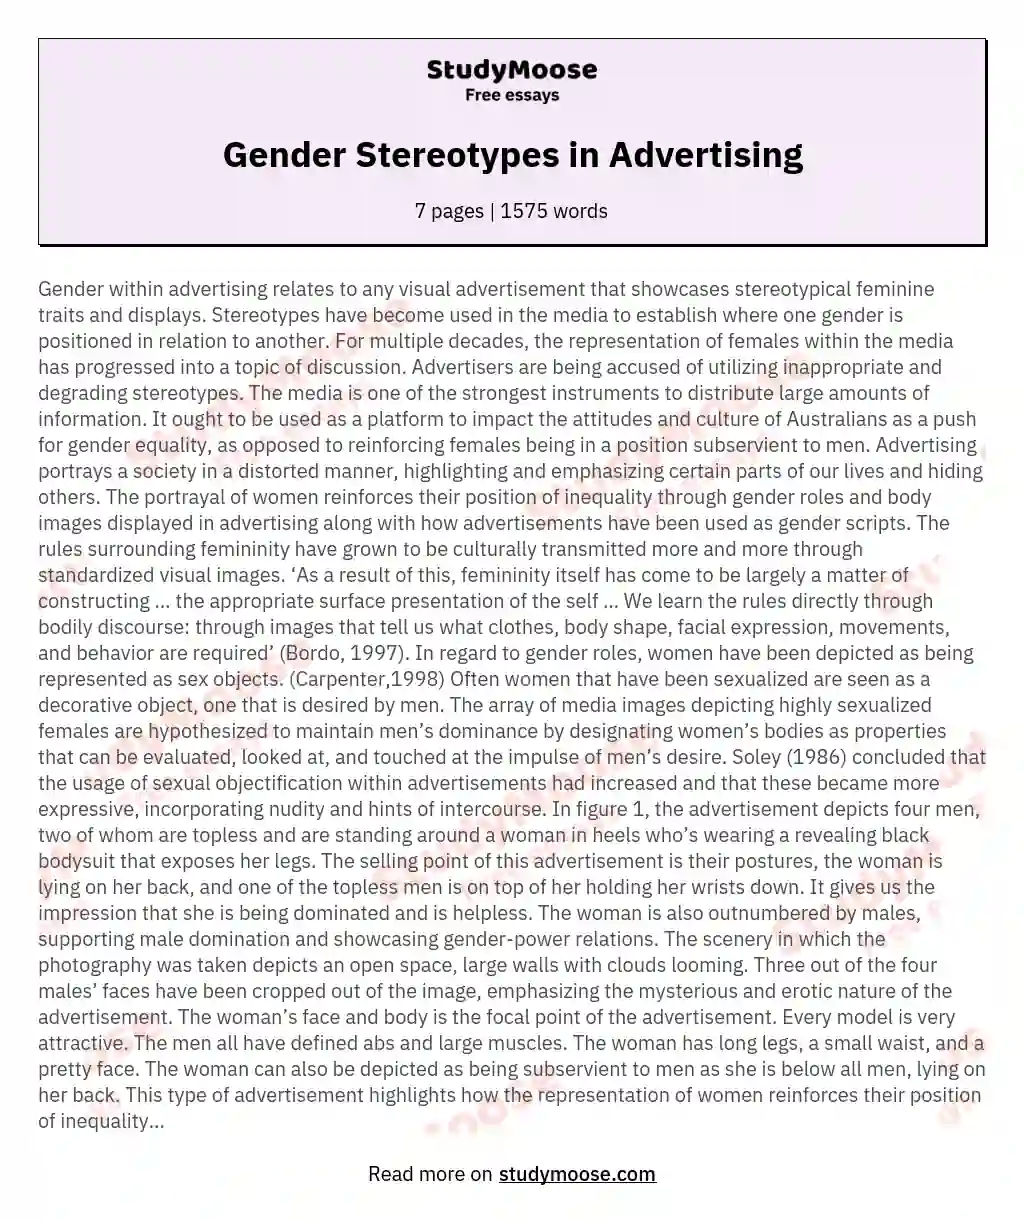 Gender Stereotypes in Advertising